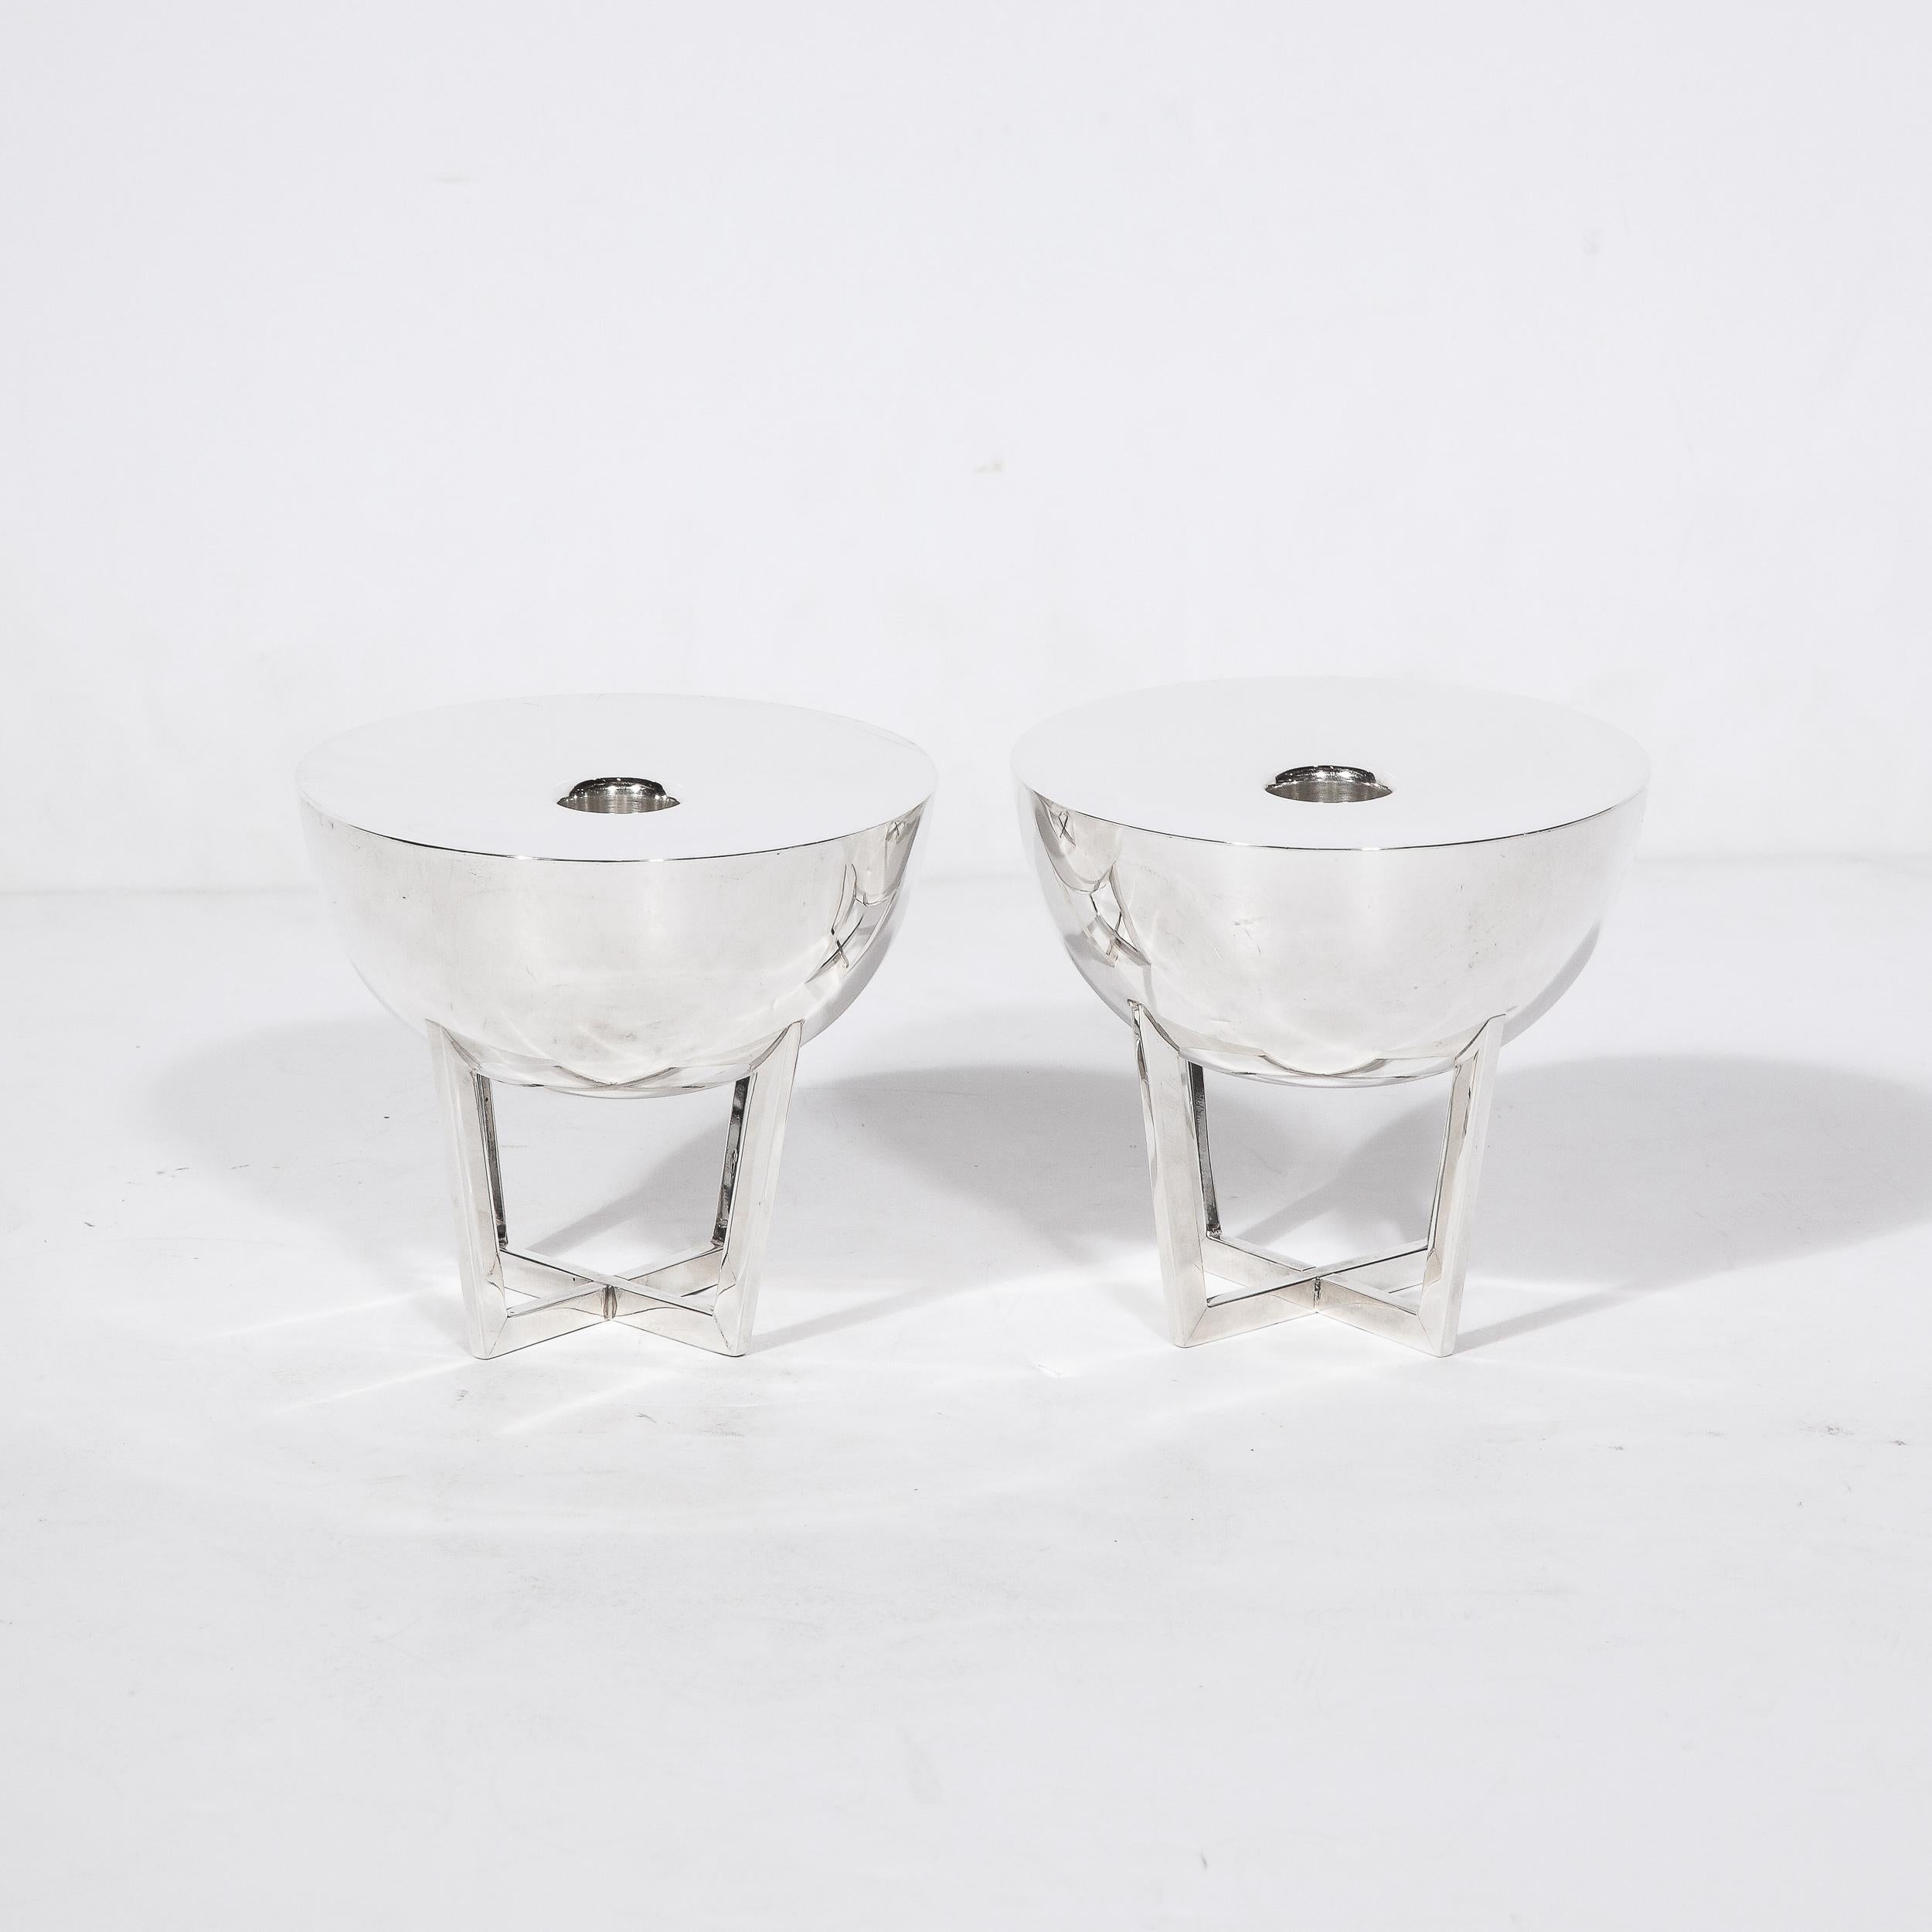 Dieses seltene Paar silberner Kerzenhalter stammt von dem Designer Allen Adler. Adler gilt als einer der größten amerikanischen Silberdesigner der Geschichte; seine Arbeiten wurden in bedeutende Museen und Privatsammlungen weltweit aufgenommen.